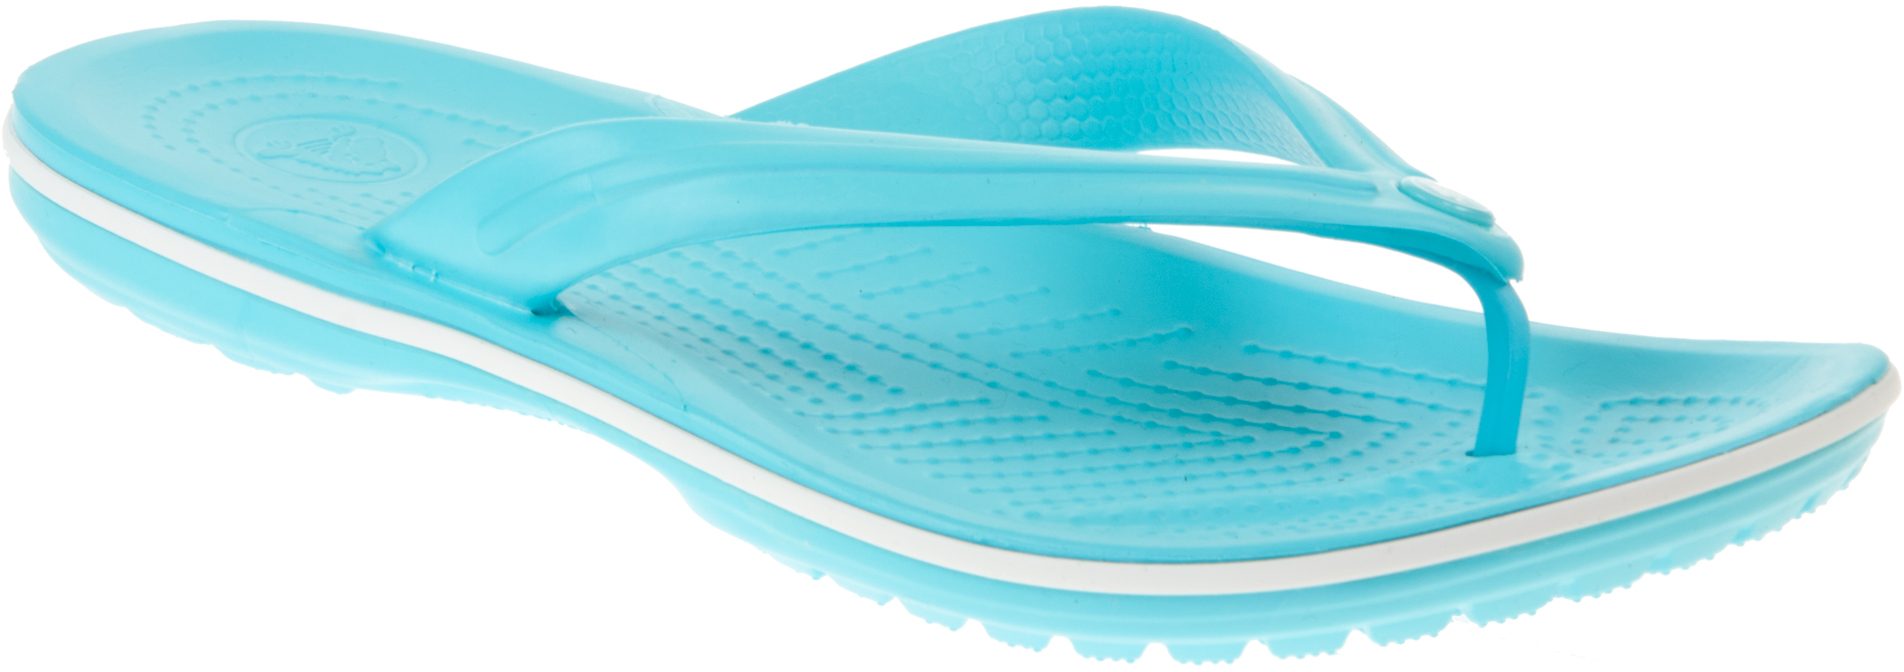 Crocs Crocband Flip Pool / White 11033-4dy - Toe Post Sandals ...